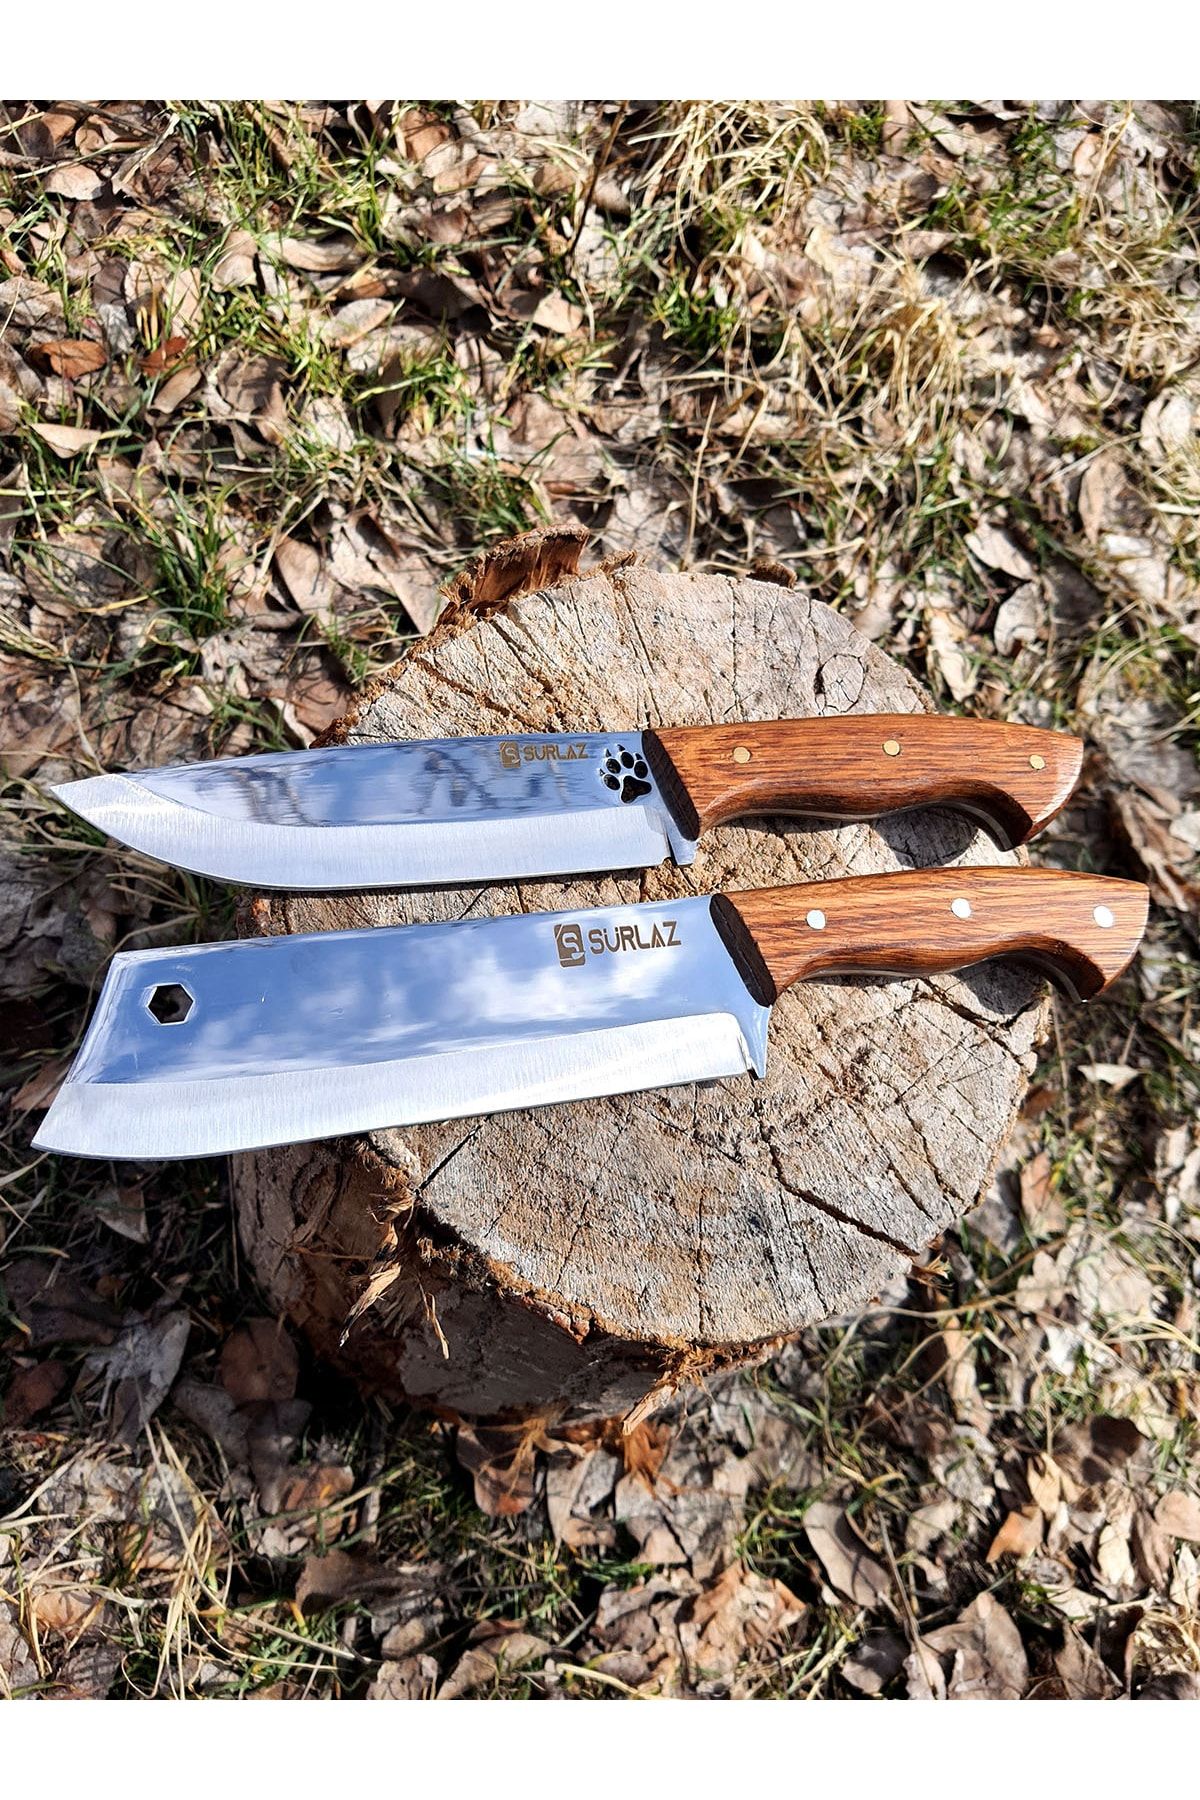 SürLaz Kamp Mutfak Bıçak Seti Ourdoor Bıçak 2'li